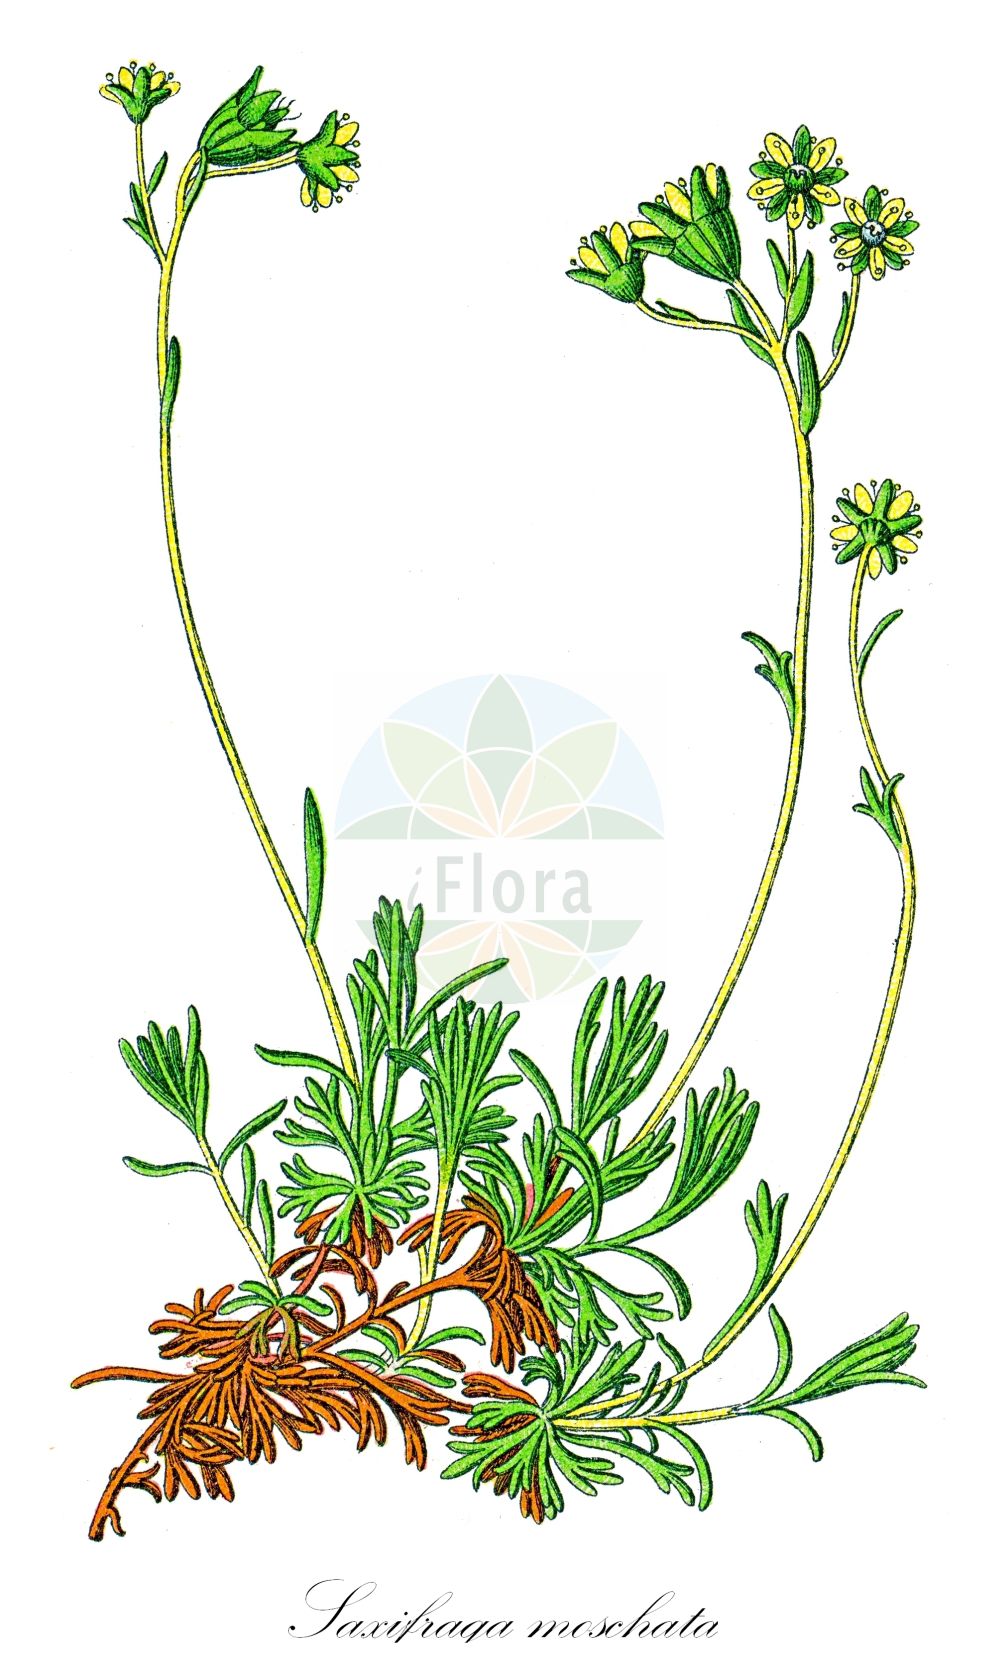 Historische Abbildung von Saxifraga moschata (Moschus-Steinbrech - Musky Saxifrage). Das Bild zeigt Blatt, Bluete, Frucht und Same. ---- Historical Drawing of Saxifraga moschata (Moschus-Steinbrech - Musky Saxifrage). The image is showing leaf, flower, fruit and seed.(Saxifraga moschata,Moschus-Steinbrech,Musky Saxifrage,Saxifraga moschata,Saxifraga planifolia,Moschus-Steinbrech,Musky Saxifrage,Saxifraga,Steinbrech,Saxifrage,Saxifragaceae,Steinbrechgewächse,Saxifrage family,Blatt,Bluete,Frucht,Same,leaf,flower,fruit,seed,Sturm (1796f))